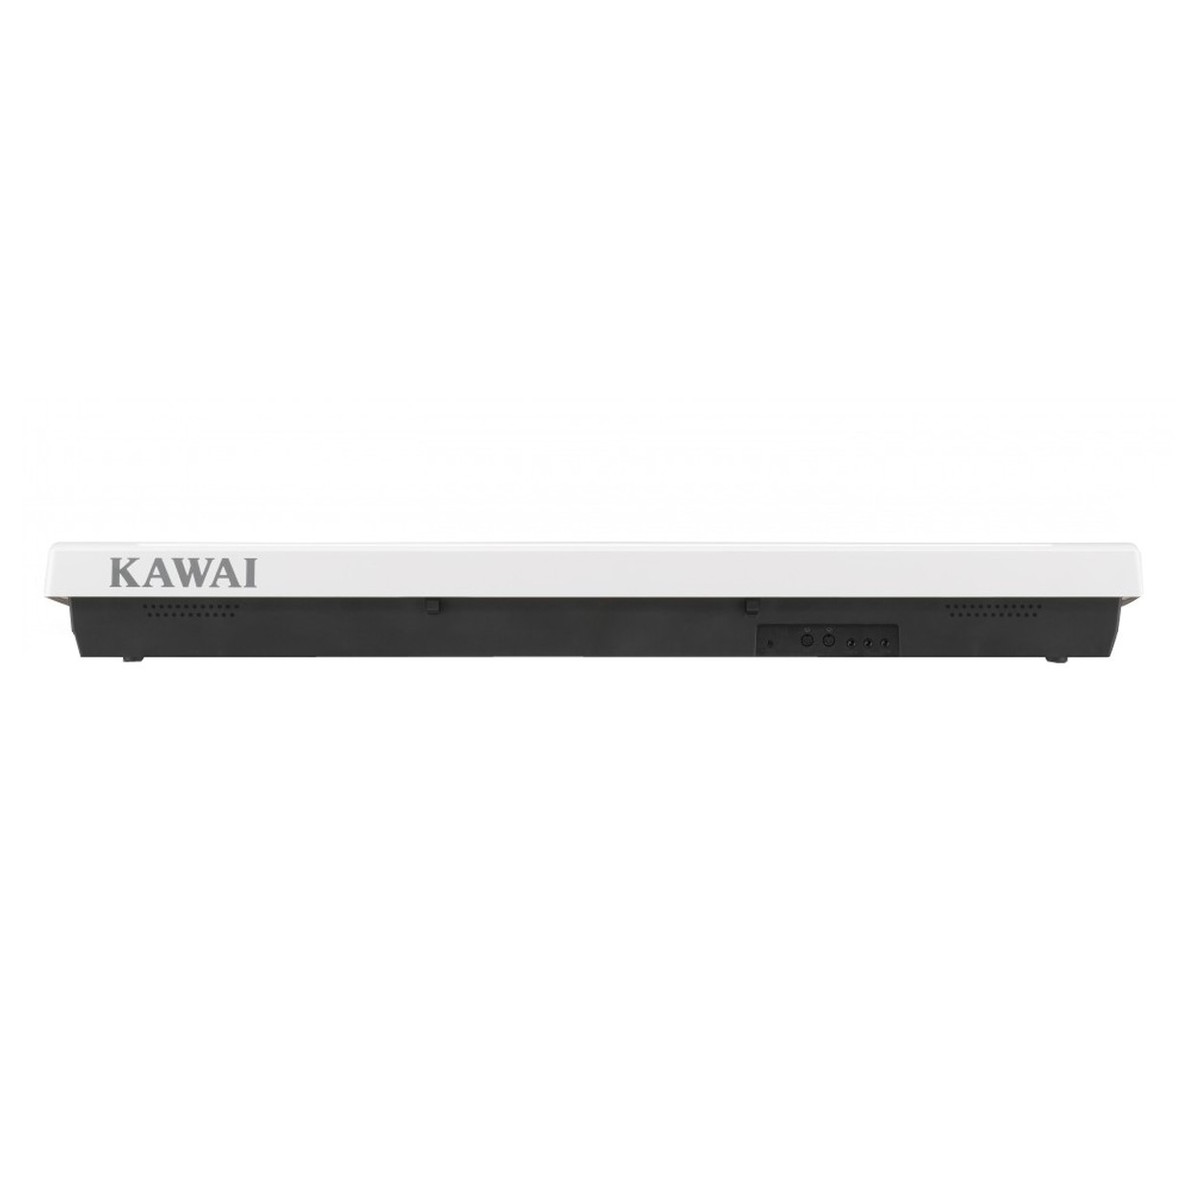 Kawai Es110 - Blanc - Piano NumÉrique Portable - Variation 2